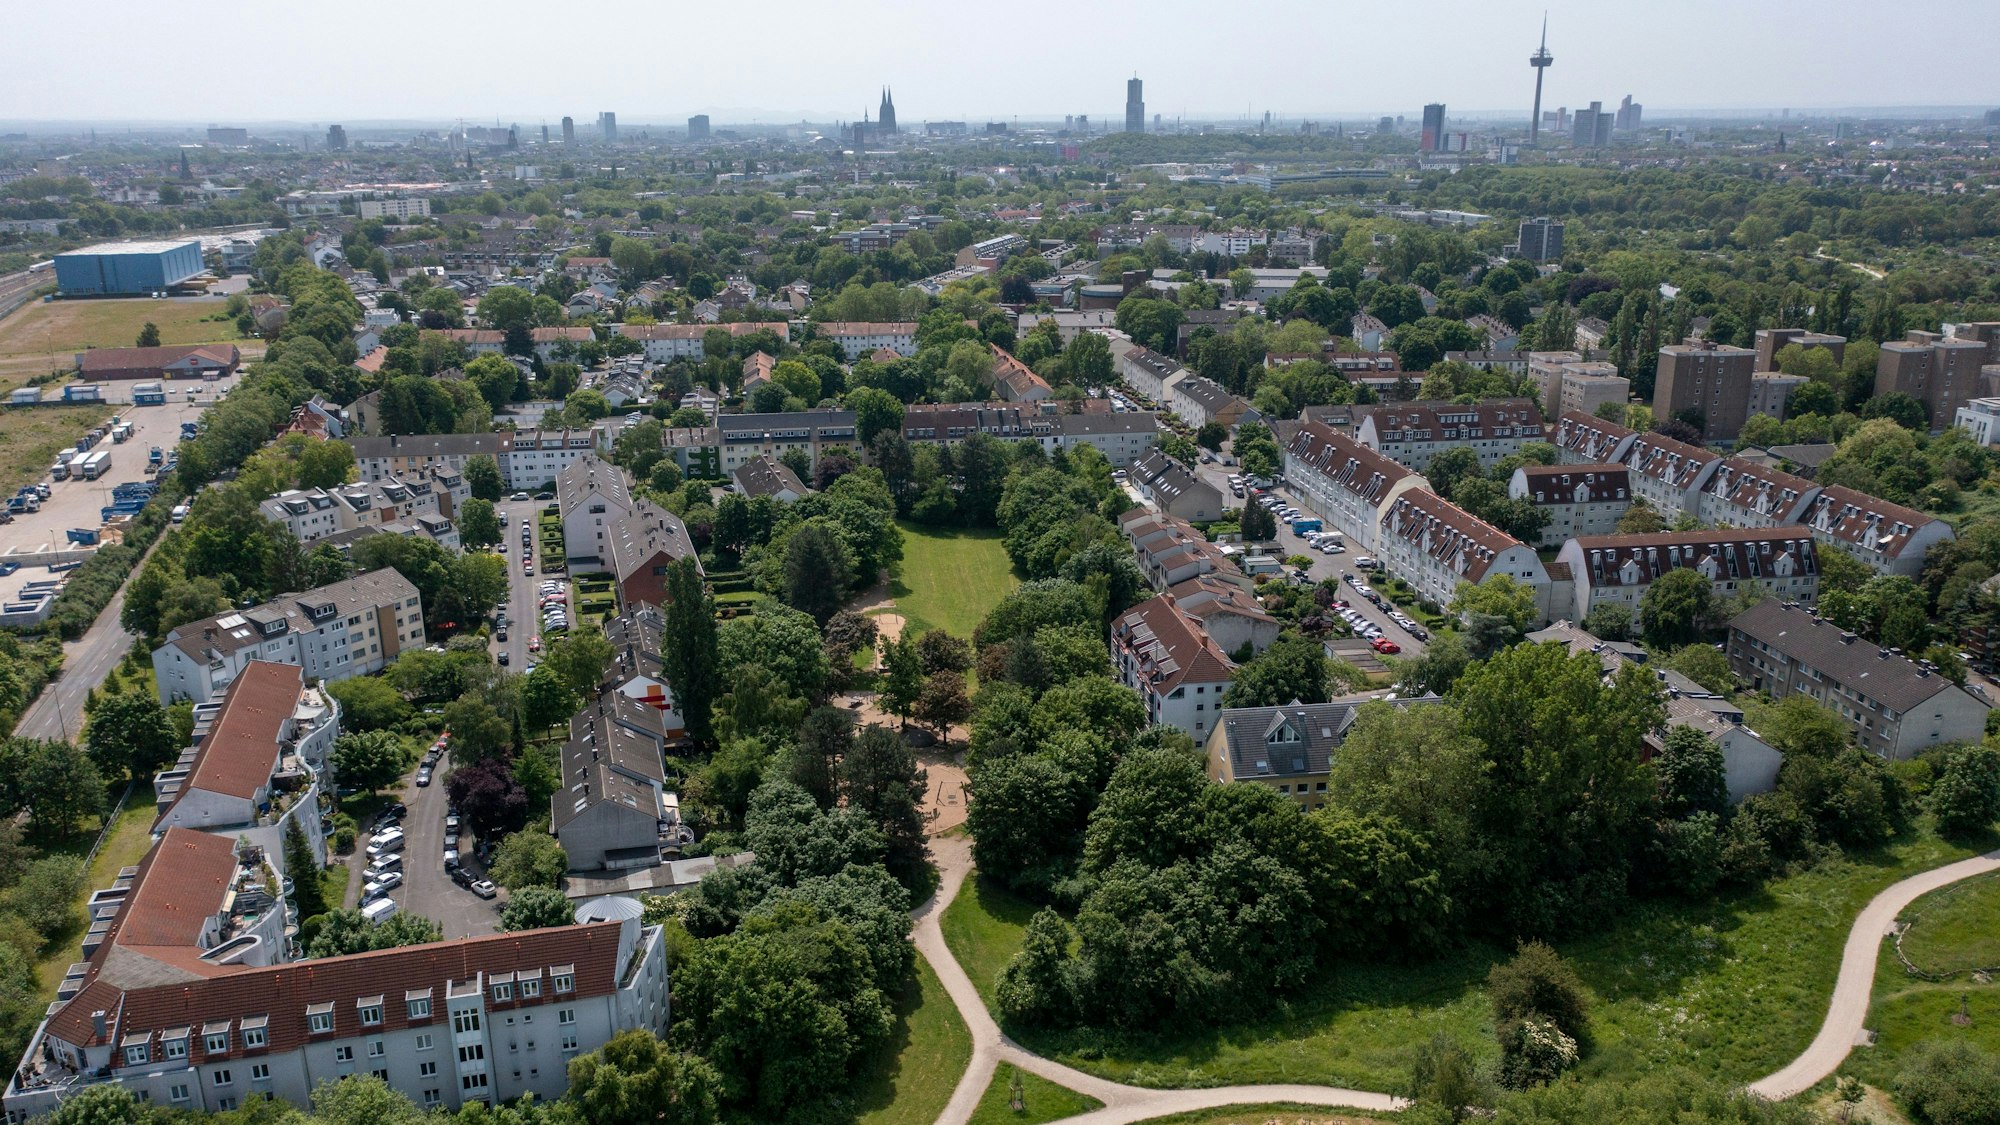 29.05.2023, Köln: Blick aus der Luft auf den Stadtteil Bilderstöckchen. Luftaufnahme mit Drohne. Foto: Uwe Weiser